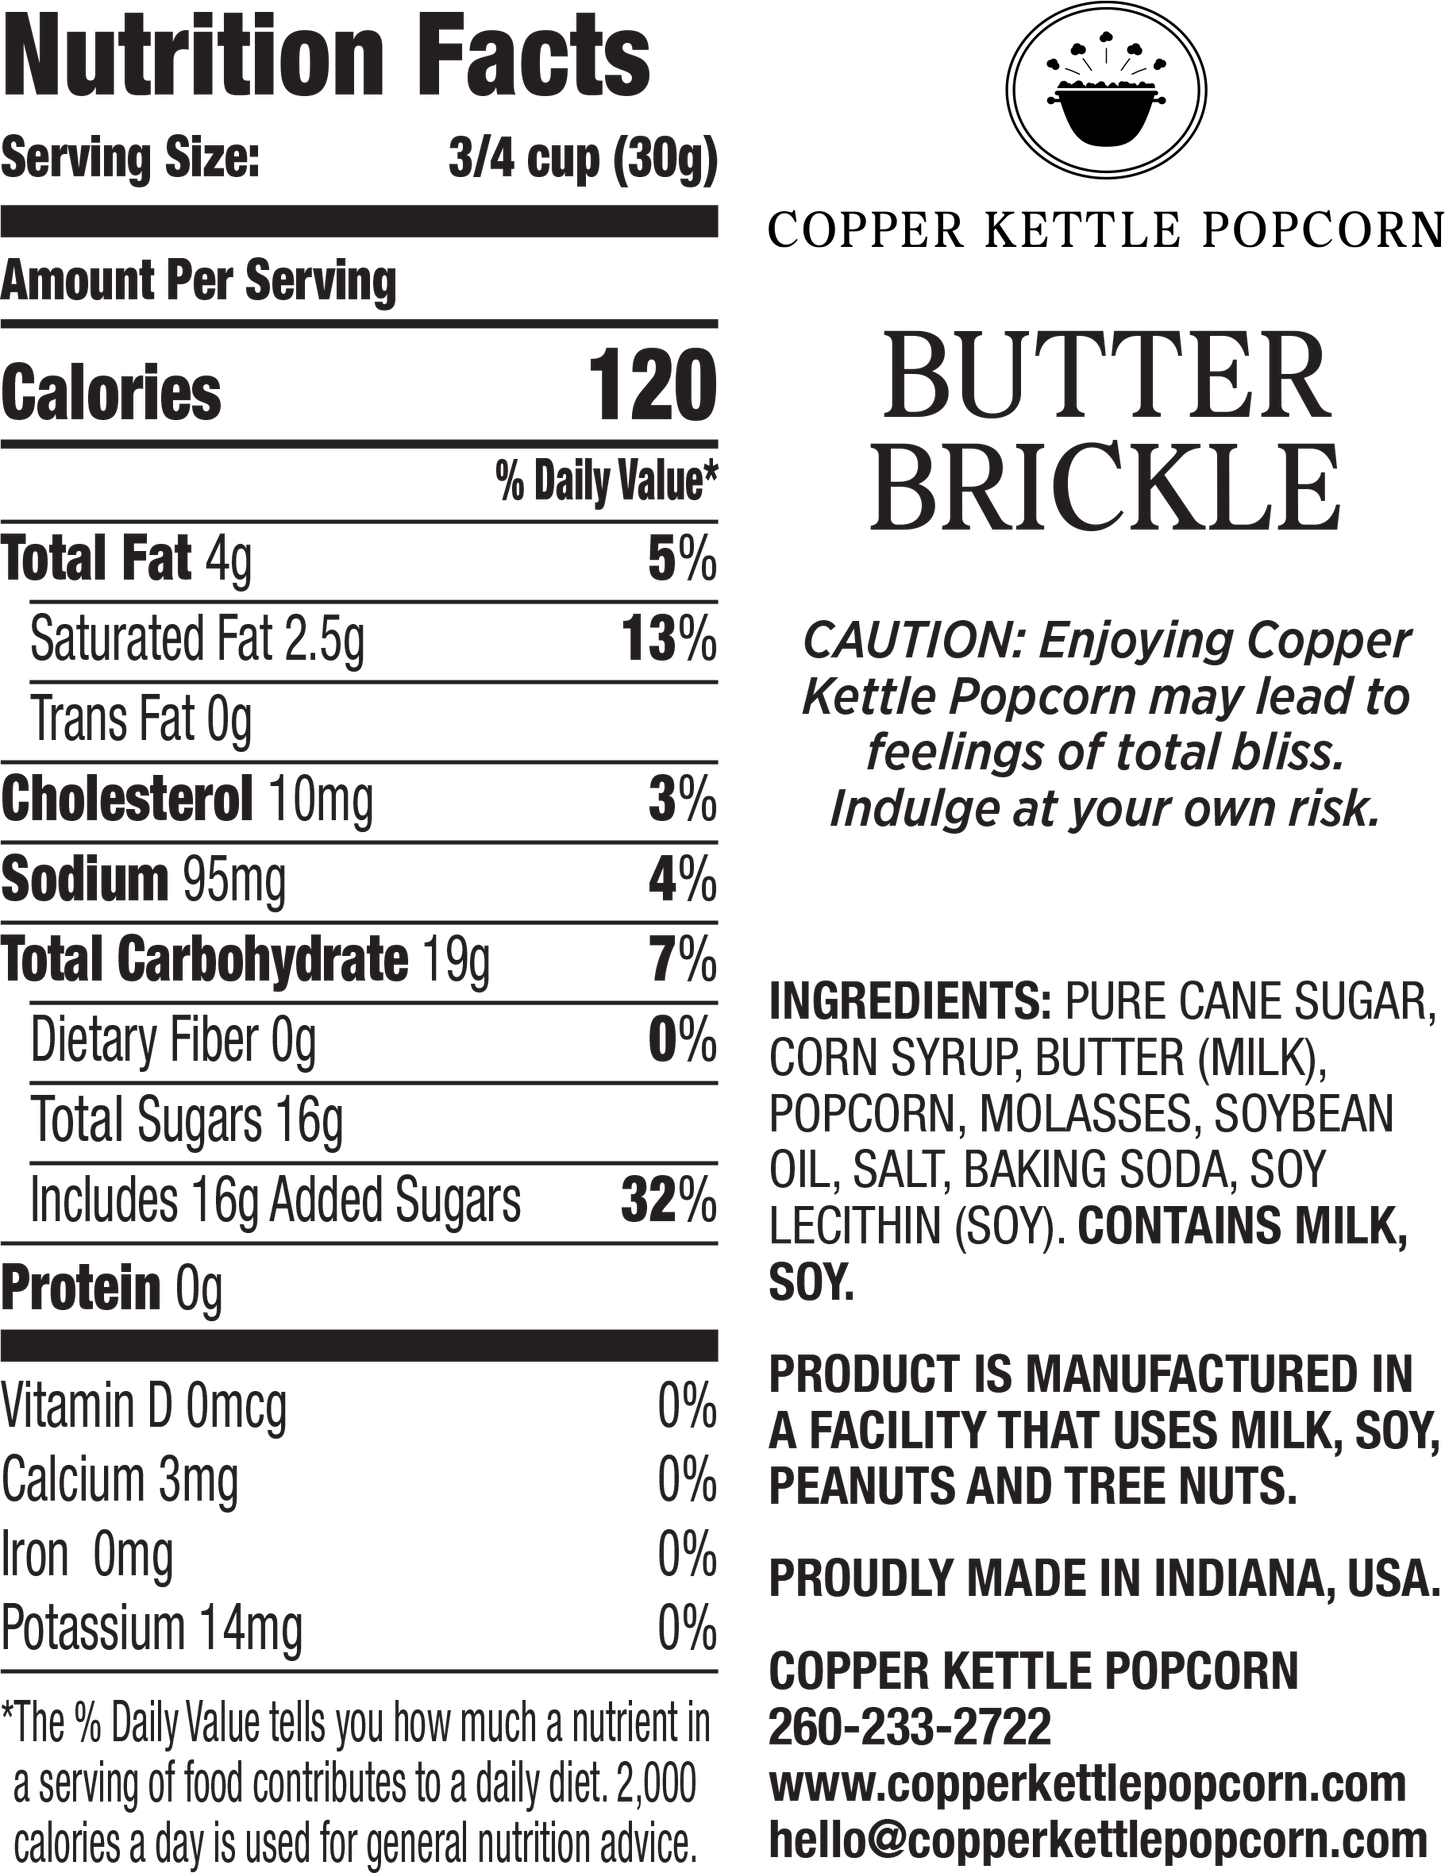 Butter Brickle Bag 4 Servings Nutrition Label